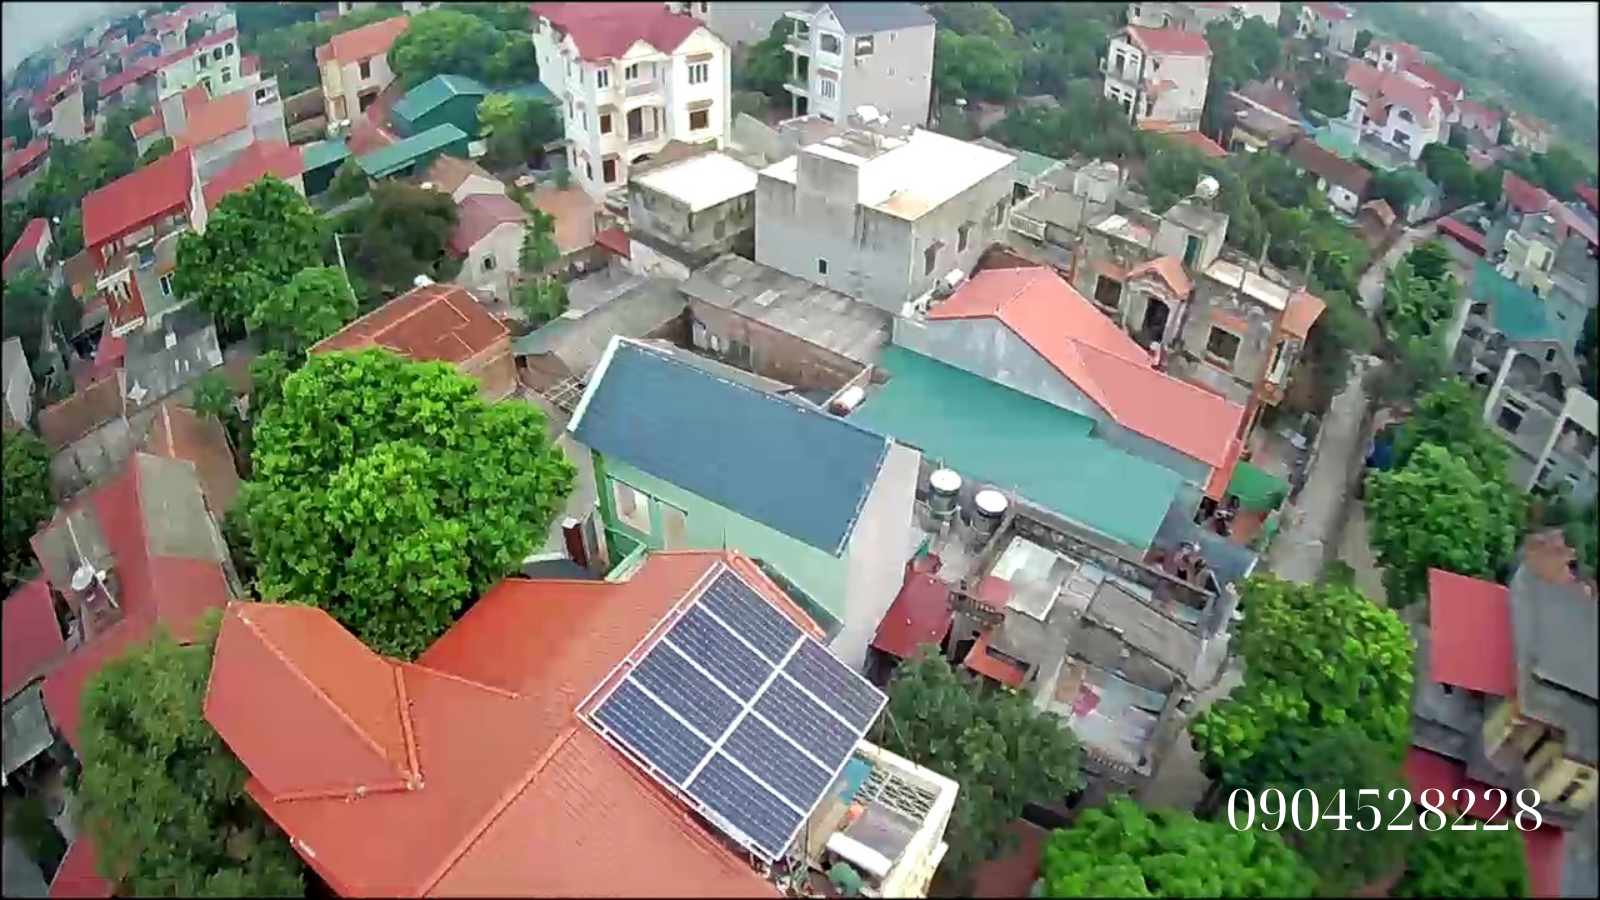 Dự án điện năng lượng mặt trời cho nhà dân công suất 3kw tại Bắc Ninh